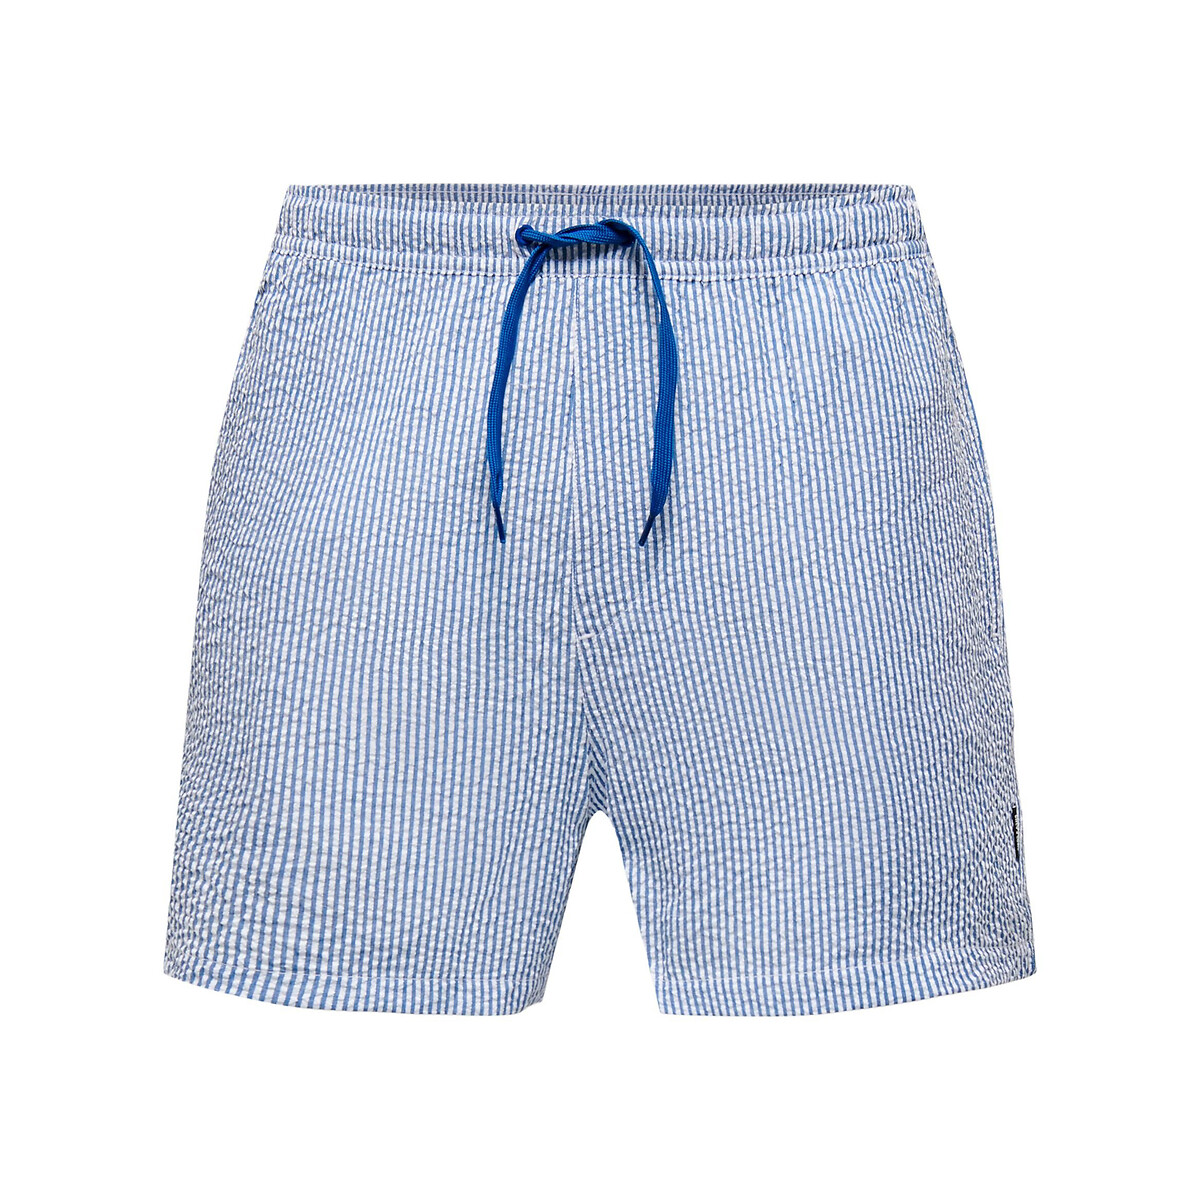 Шорты Пляжные в полоску из легкой полосатой ткани Ted M синий LaRedoute, размер M - фото 1